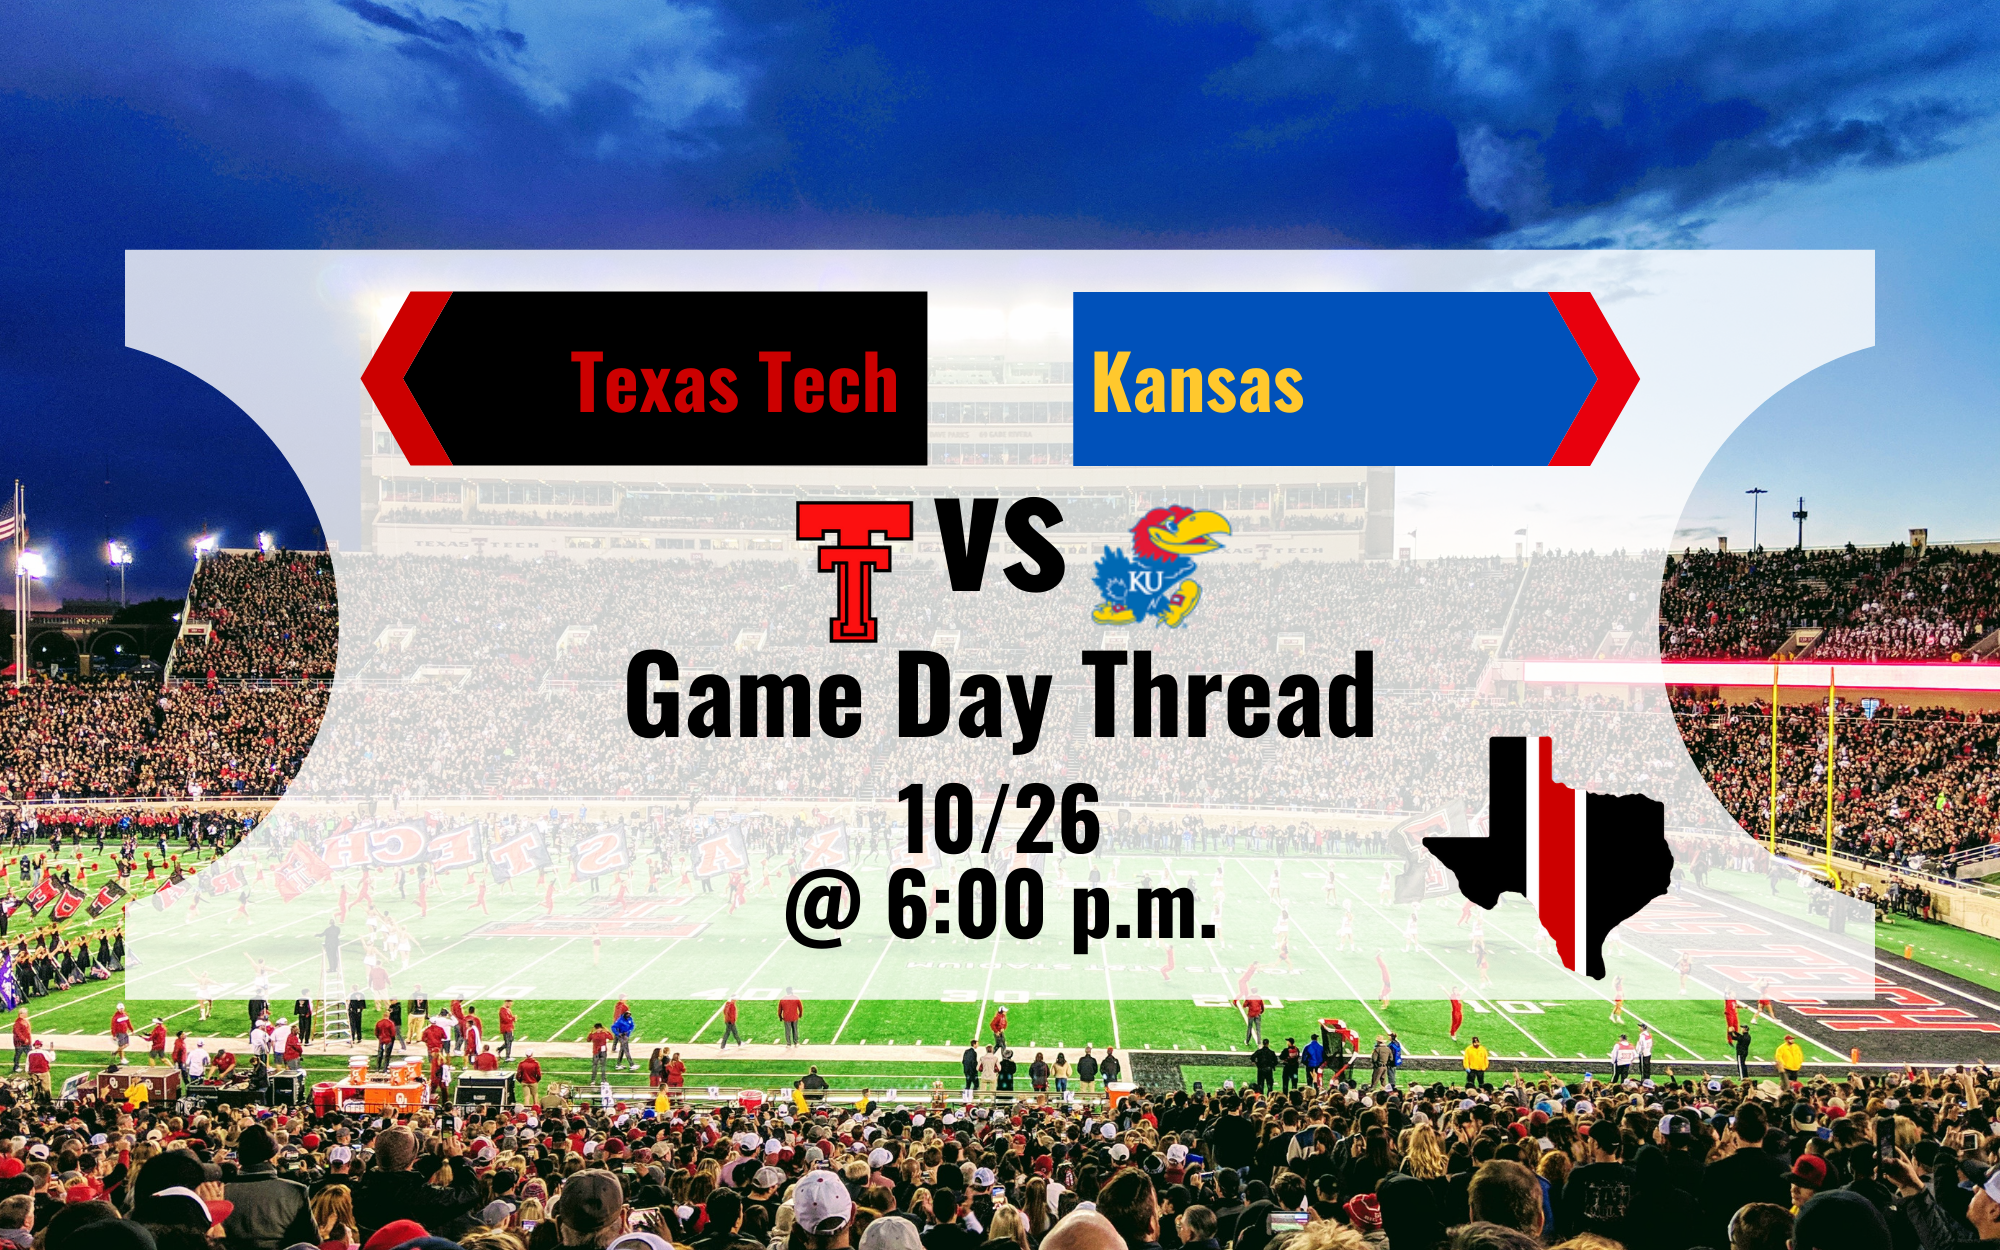 Game Day Thread 4: Texas Tech vs. Kansas